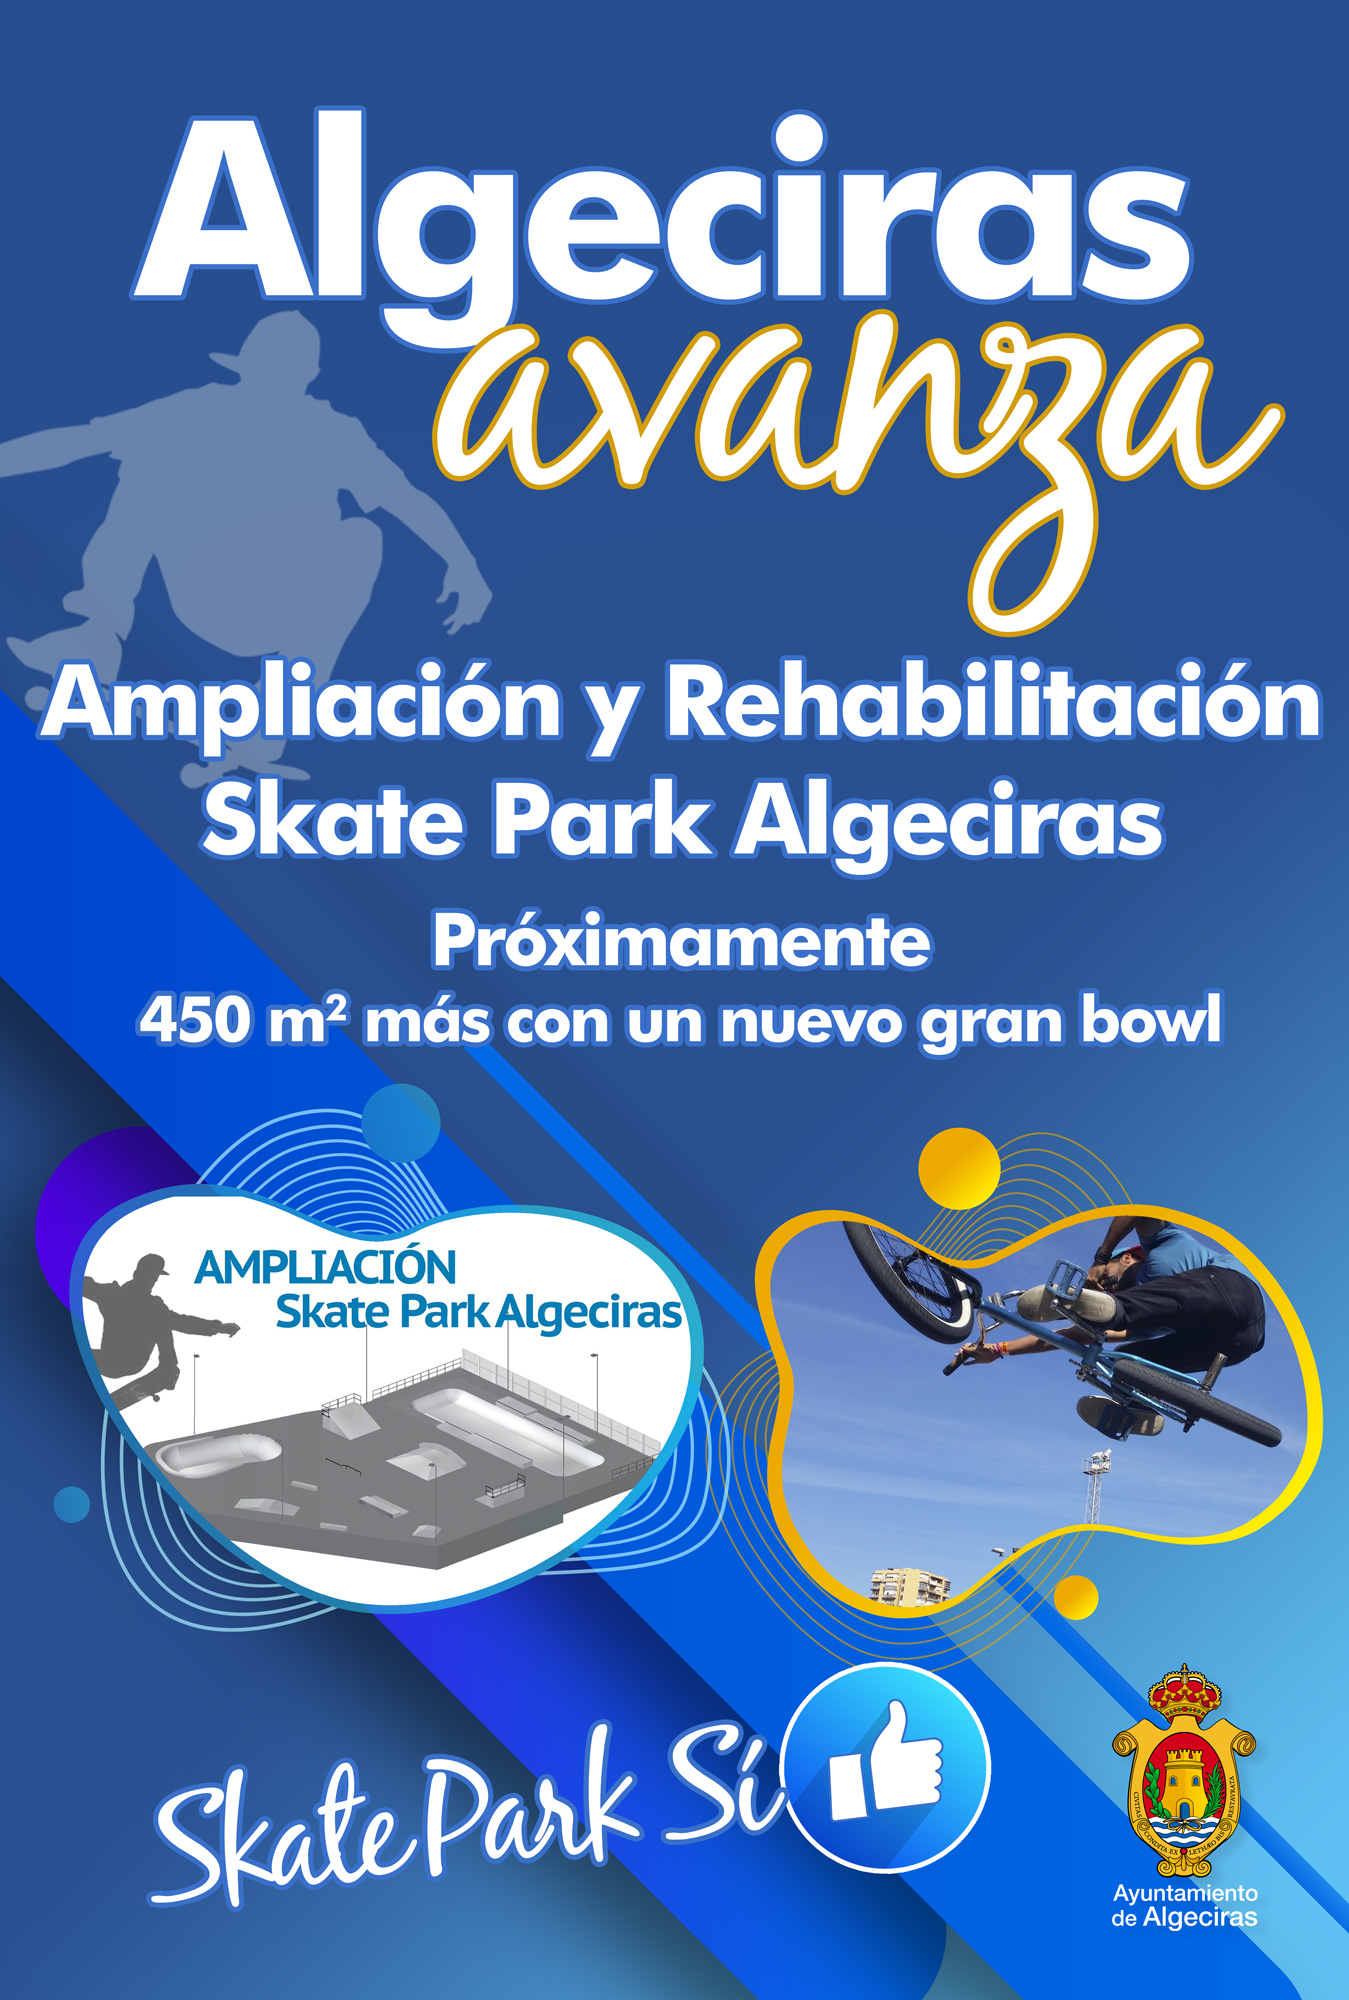 Algeciras avanza Skate